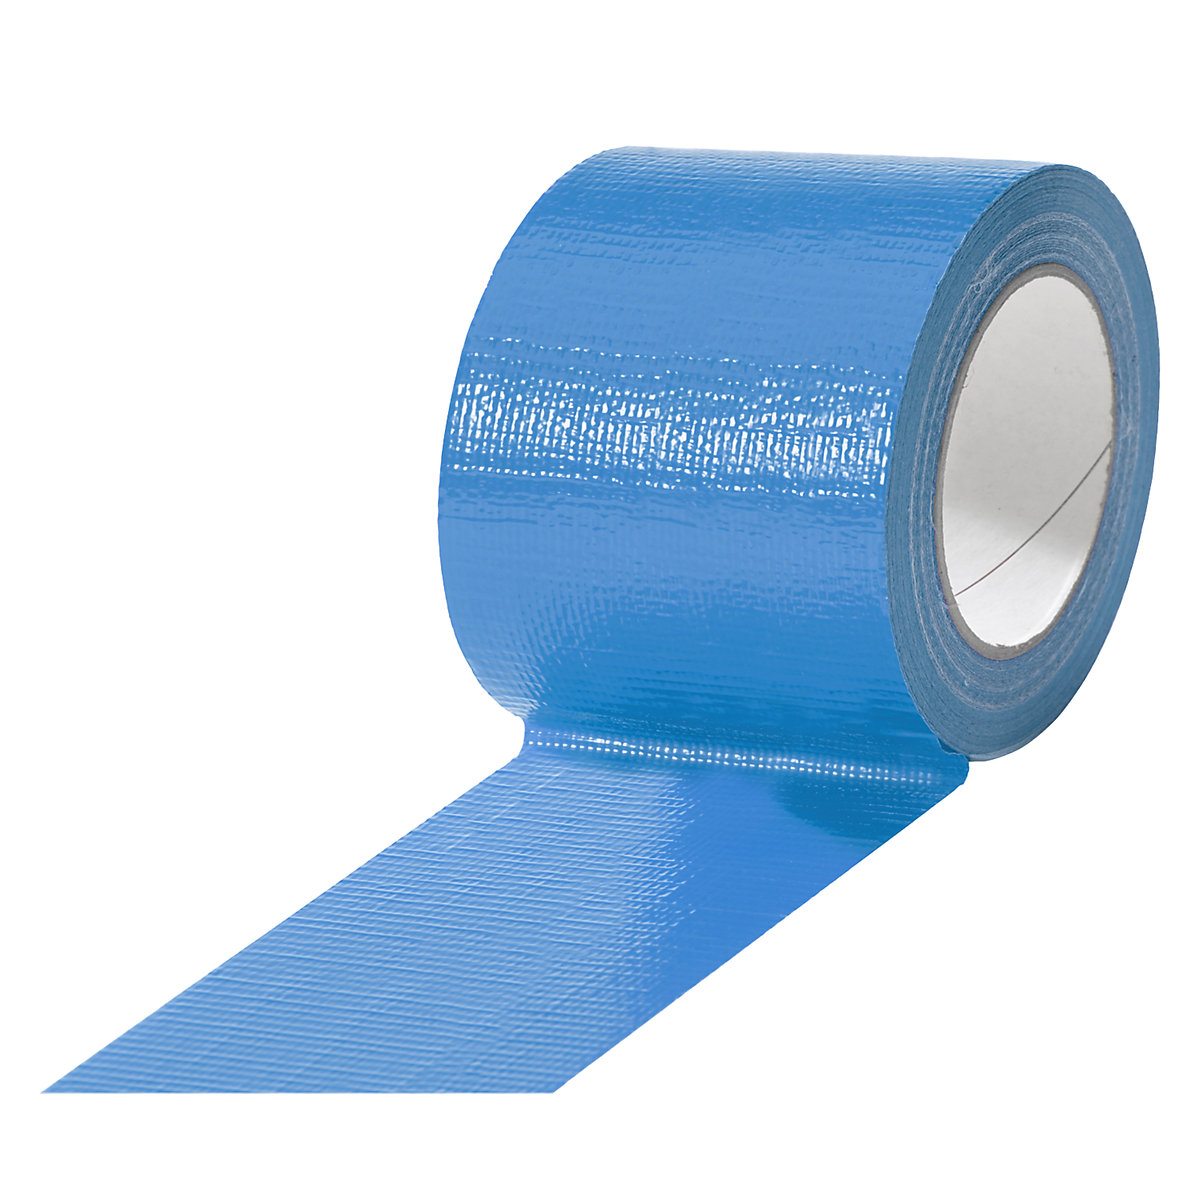 Traka od tkanine, u različitim bojama, pak. 12 rola, u plavoj boji, širina trake 75 mm-13